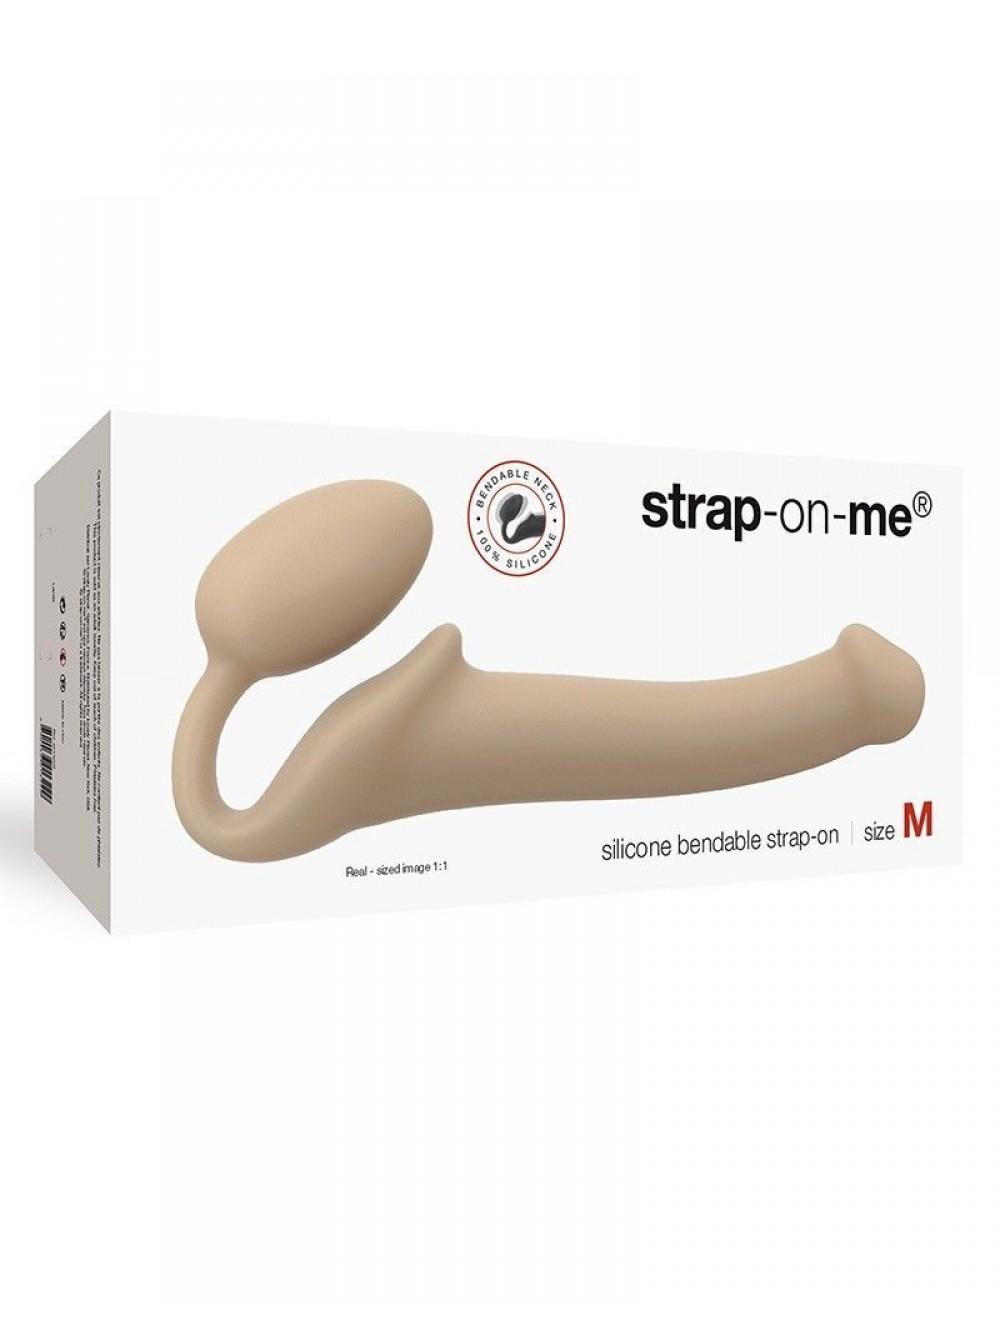 Безремневой страпон Strap-On-Me Flesh размер M, диаметр 3,3см - купить в секс шопе с доставкой в Северодонецк, Вараш, Запорожье и др. города Украины.